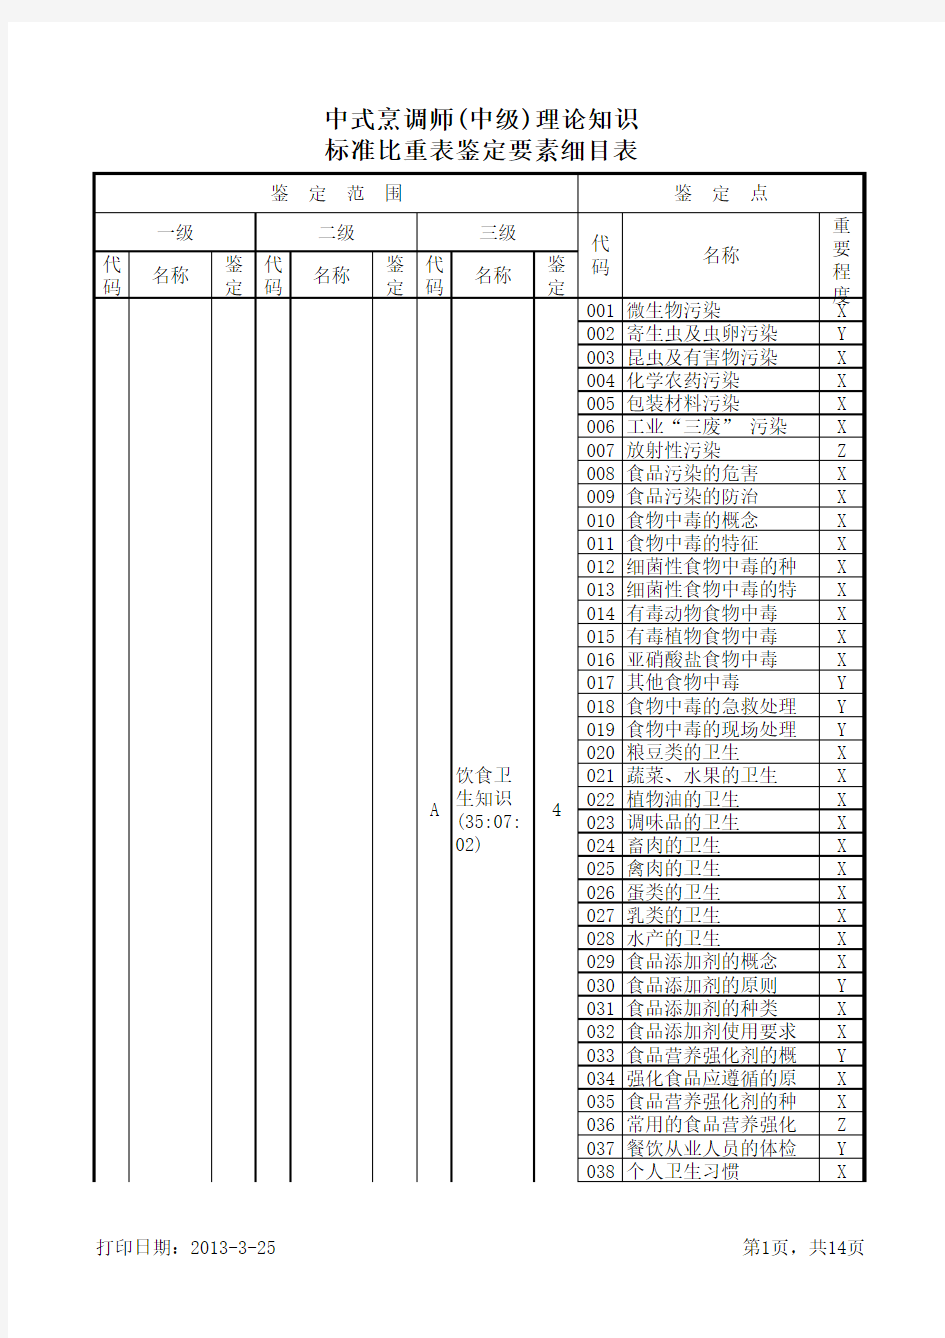 中式烹调师(中级)理论知识标准比重表鉴定要素细目表